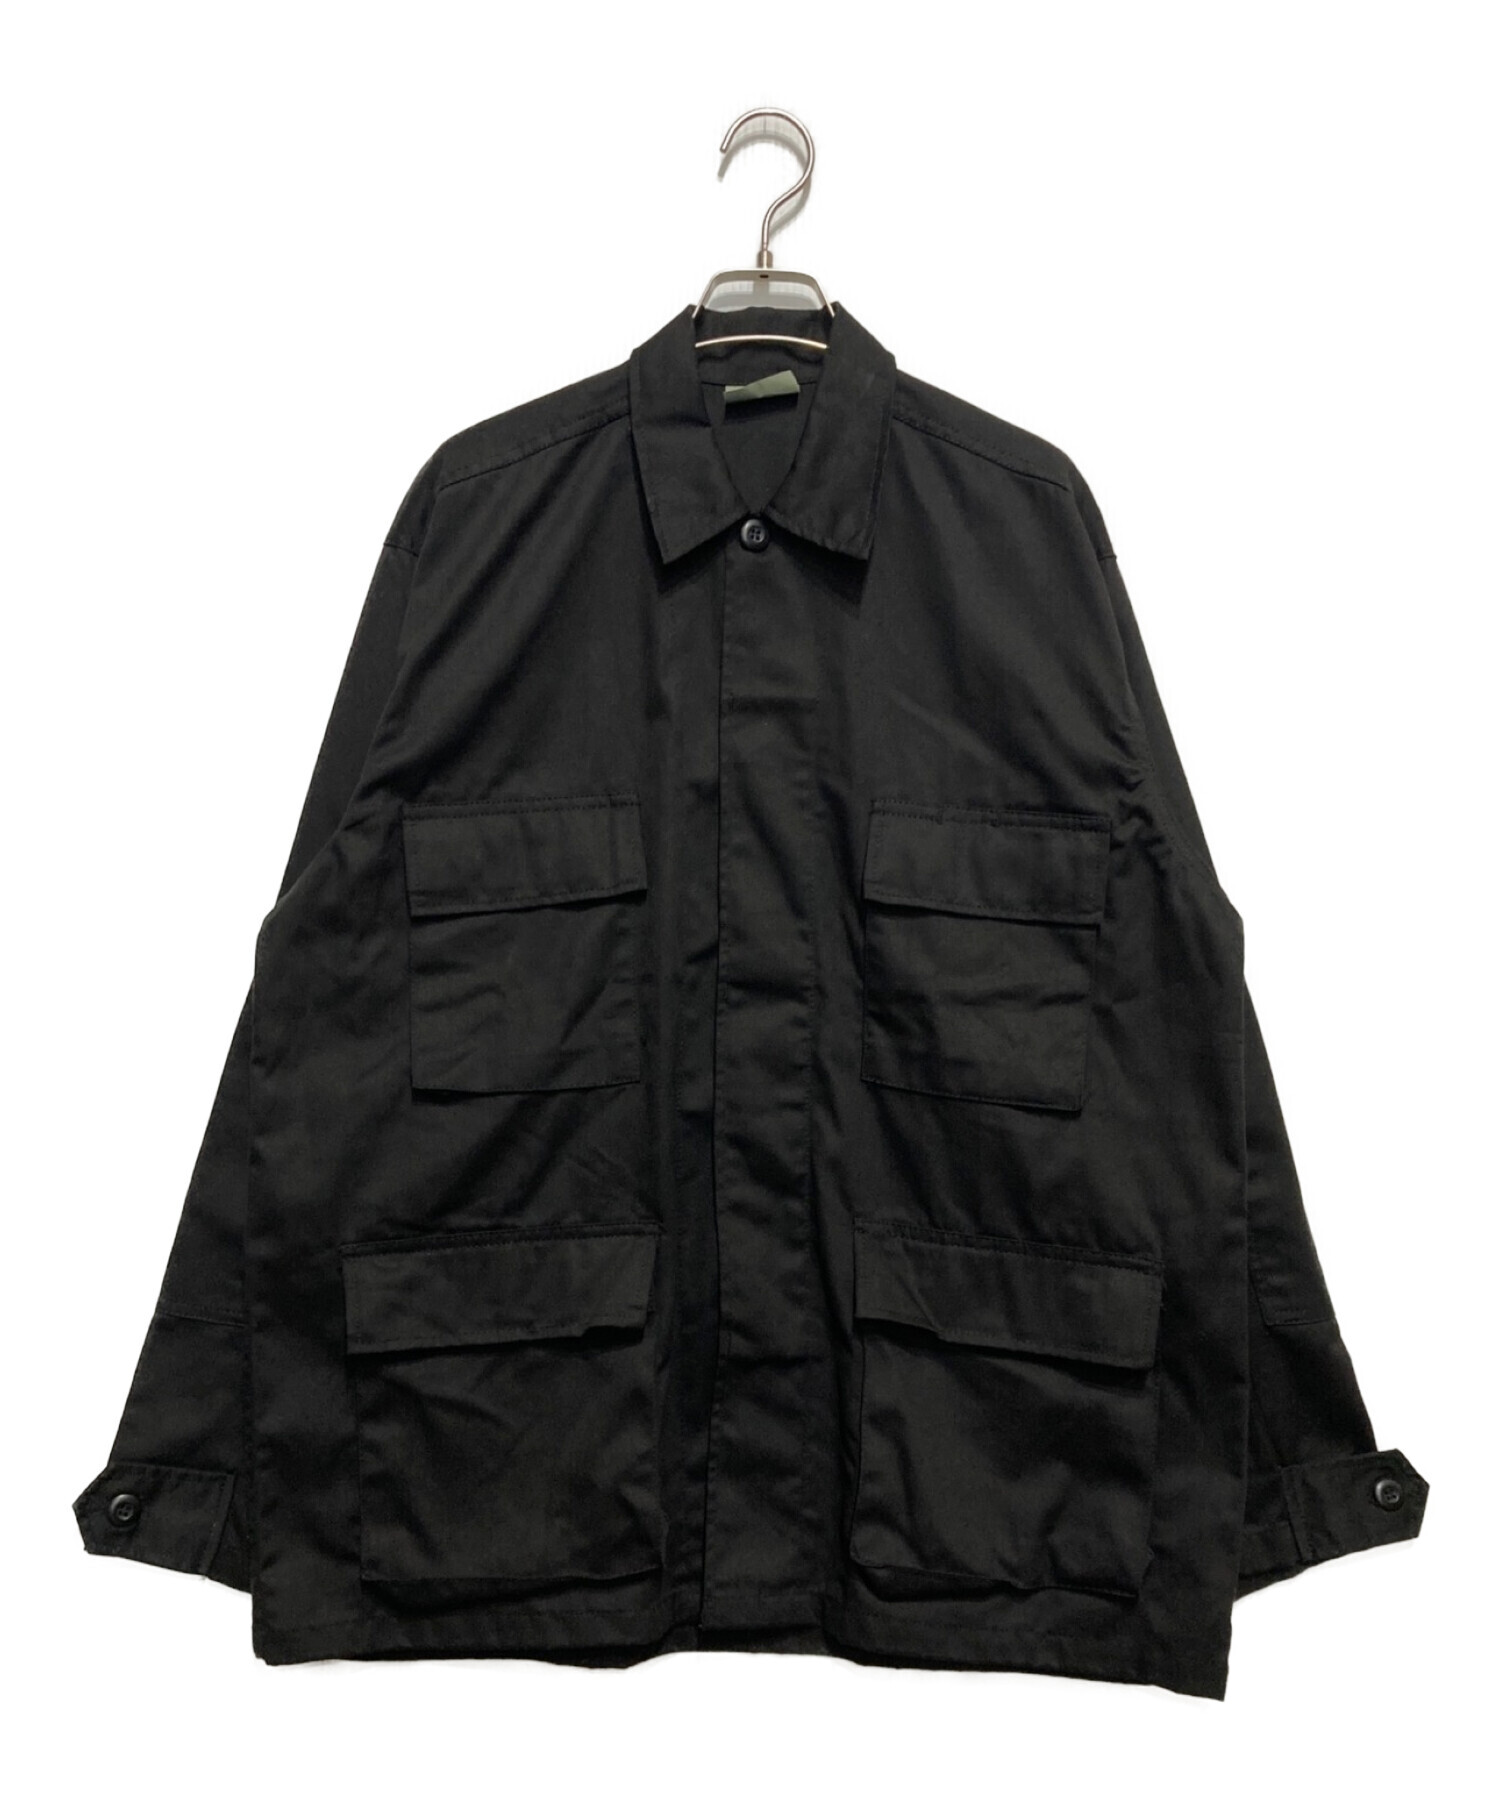 ROTHCO (ロスコ) ミリタリージャケット ブラック サイズ:Ⅿ